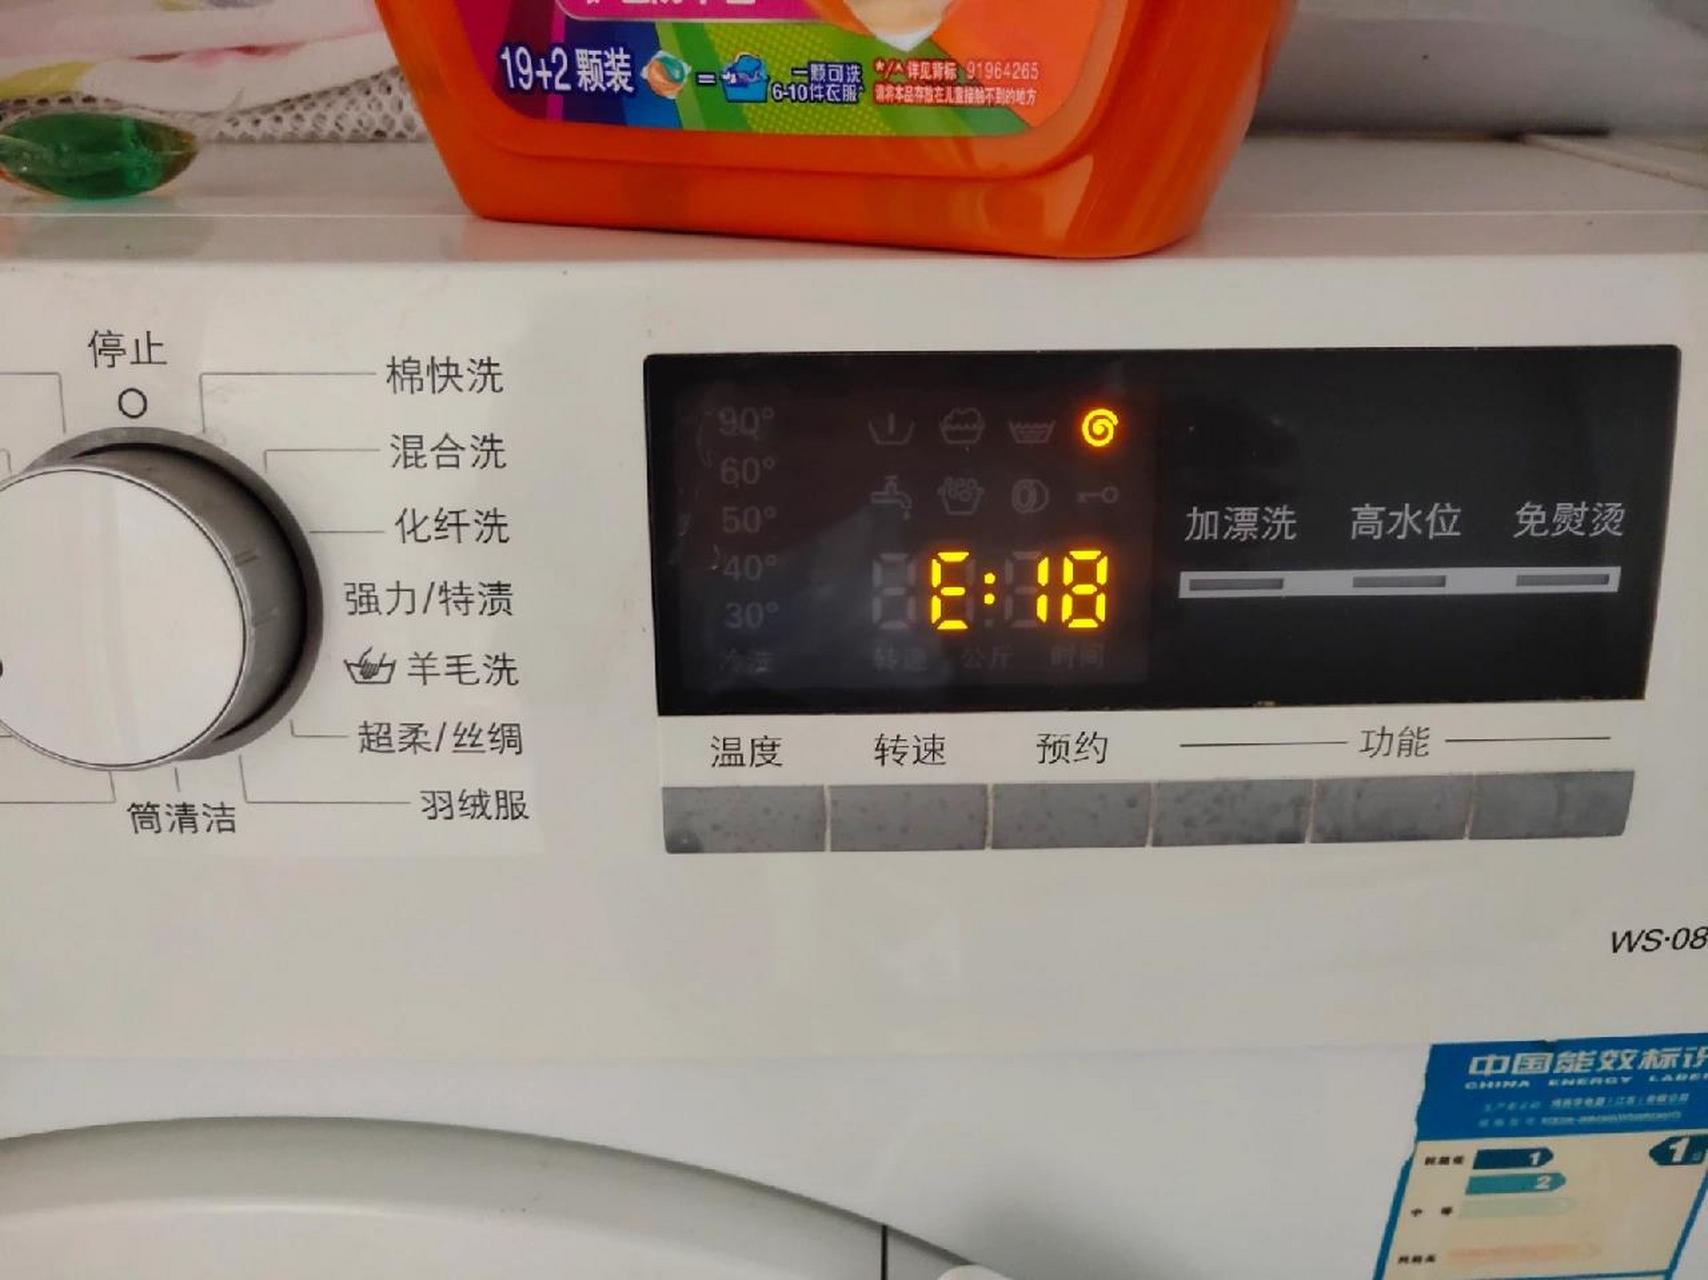 西门子洗衣机故障代码e18,出水口堵塞 今天洗衣机罢工,出现e18故障